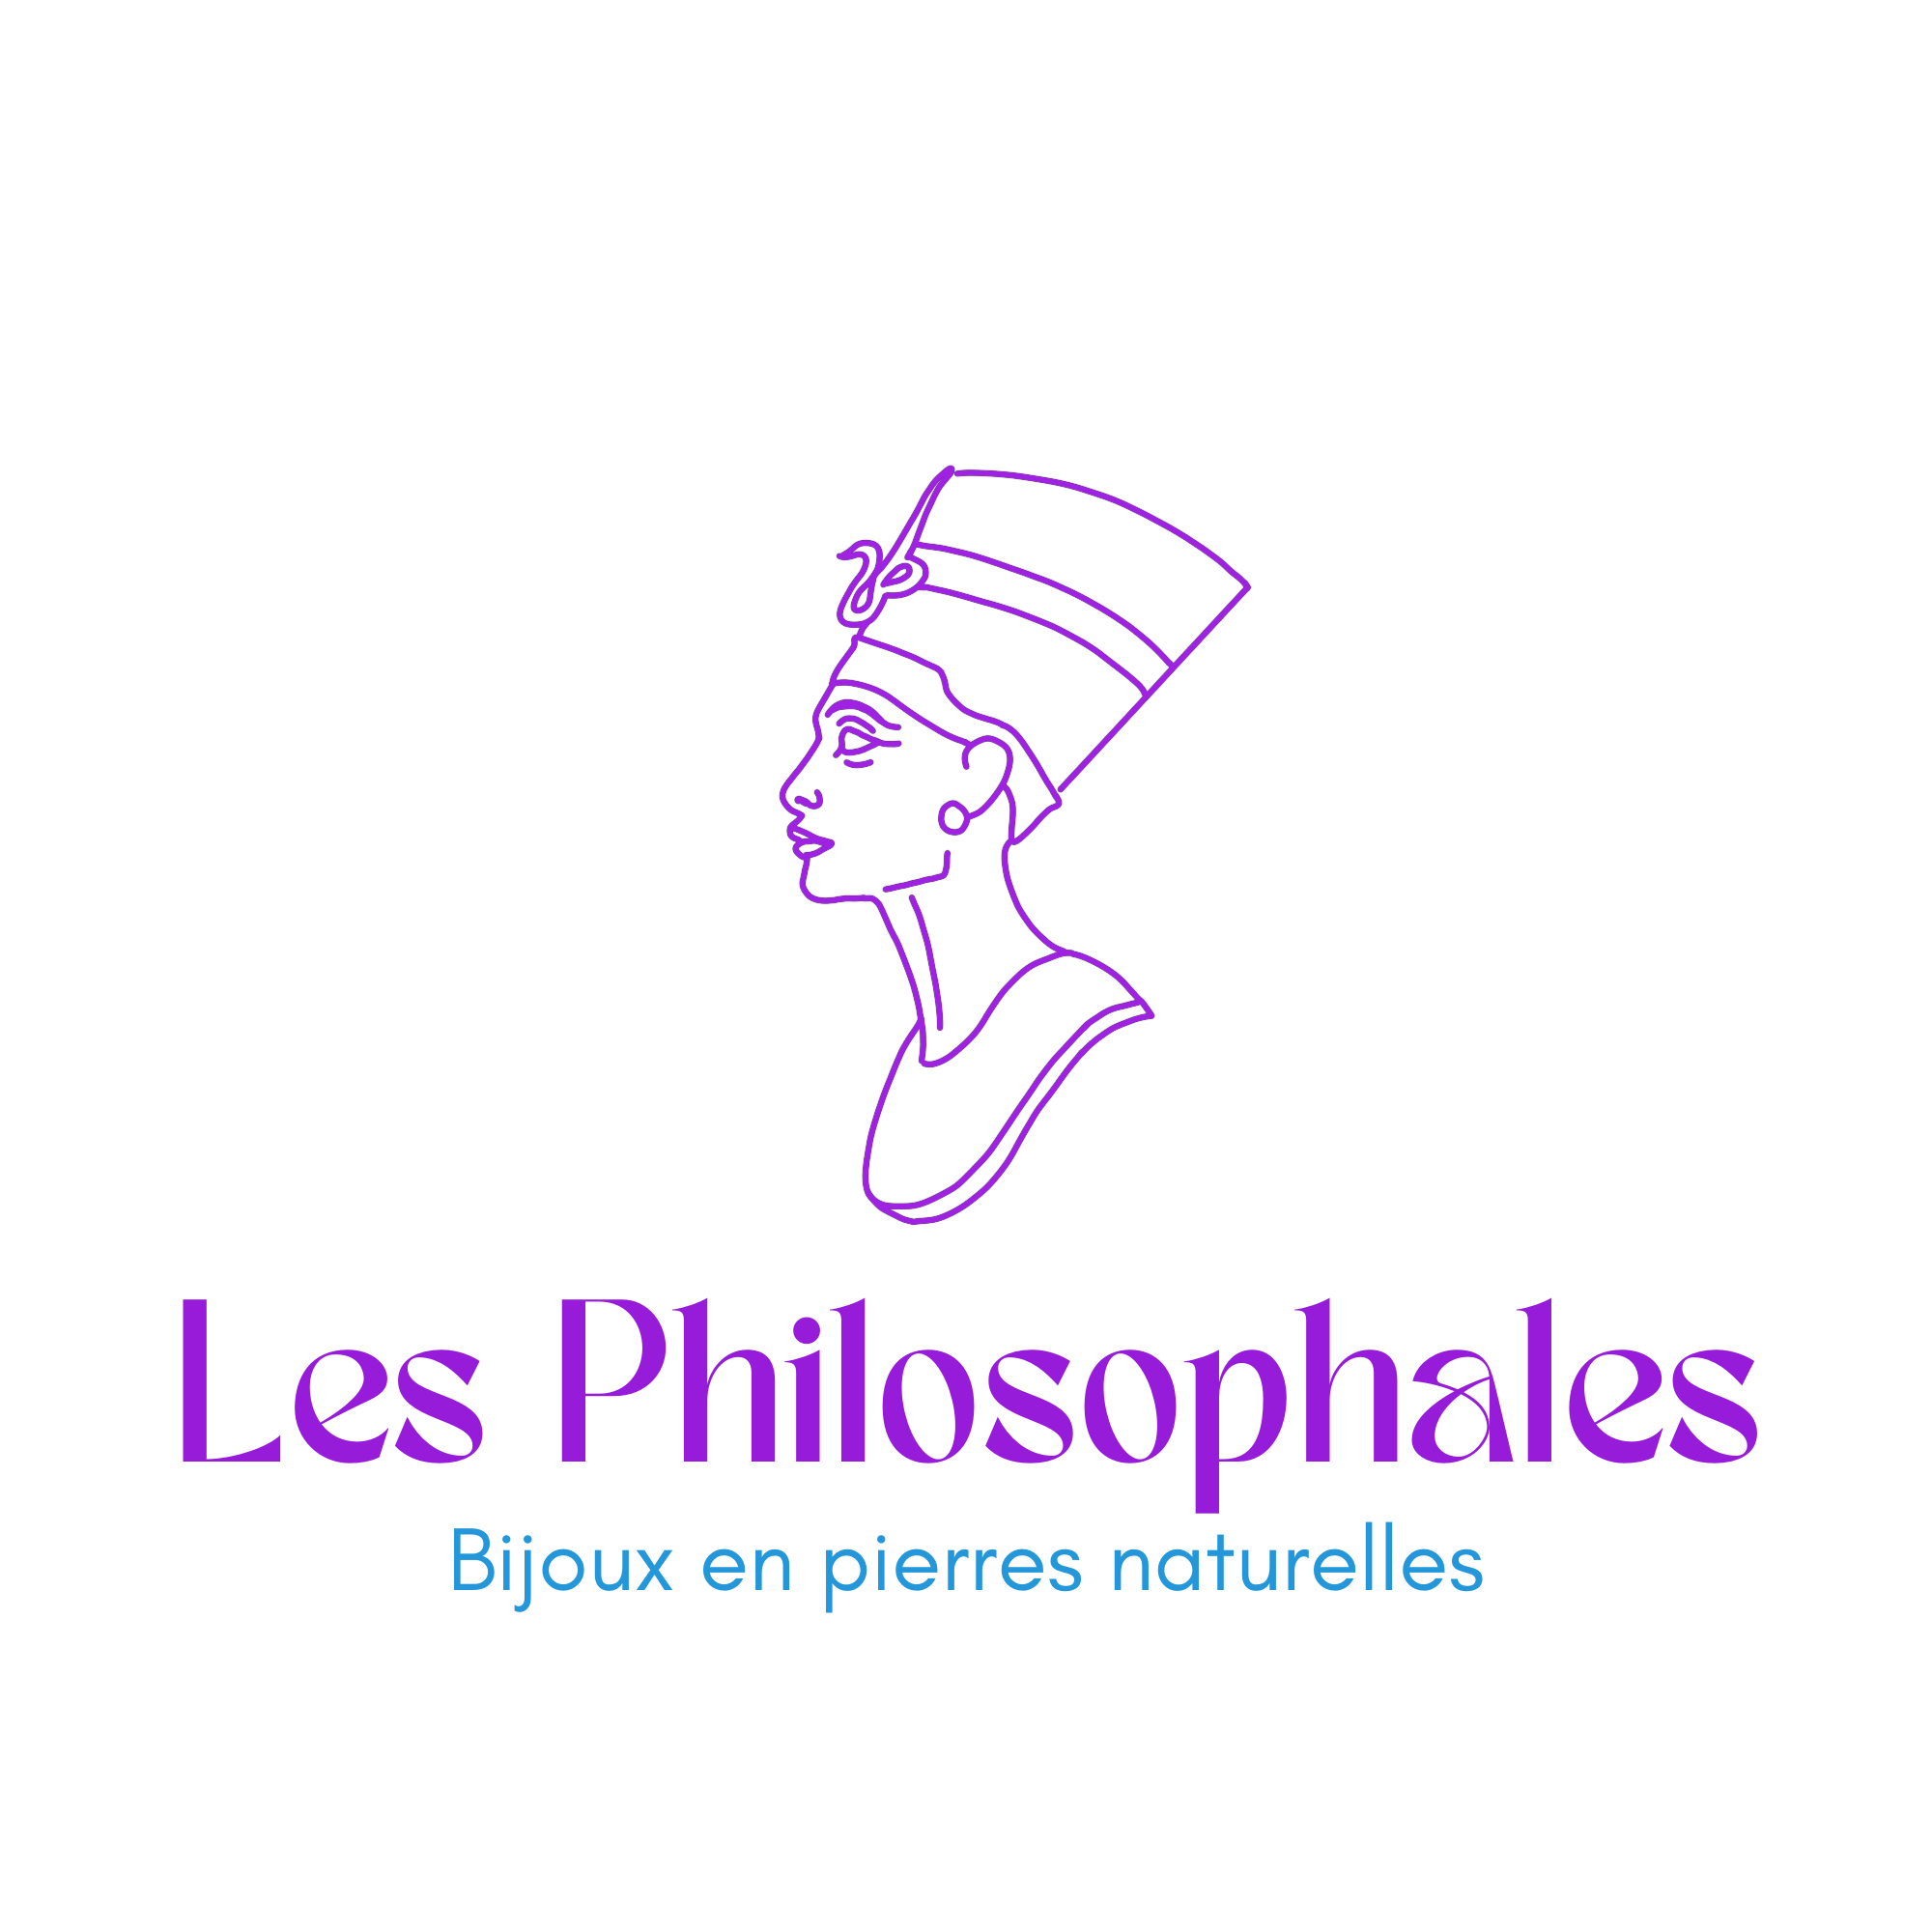 Les Philosophales